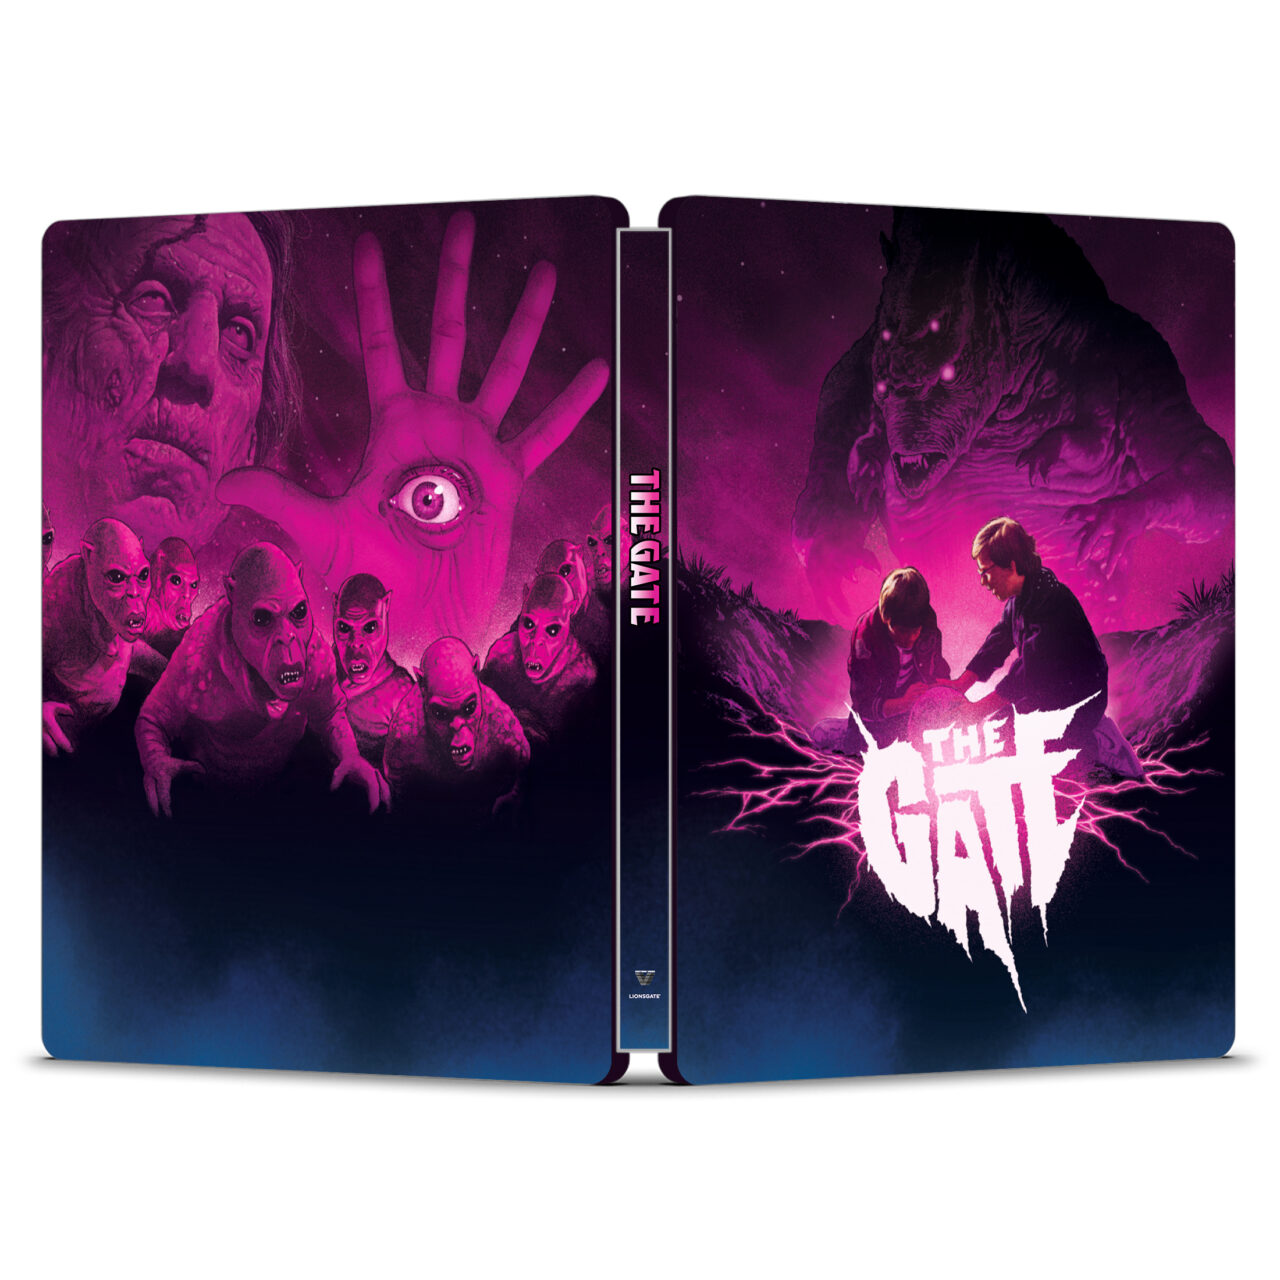 The Gate Blu-Ray Steelbook cover (Lionsgate)